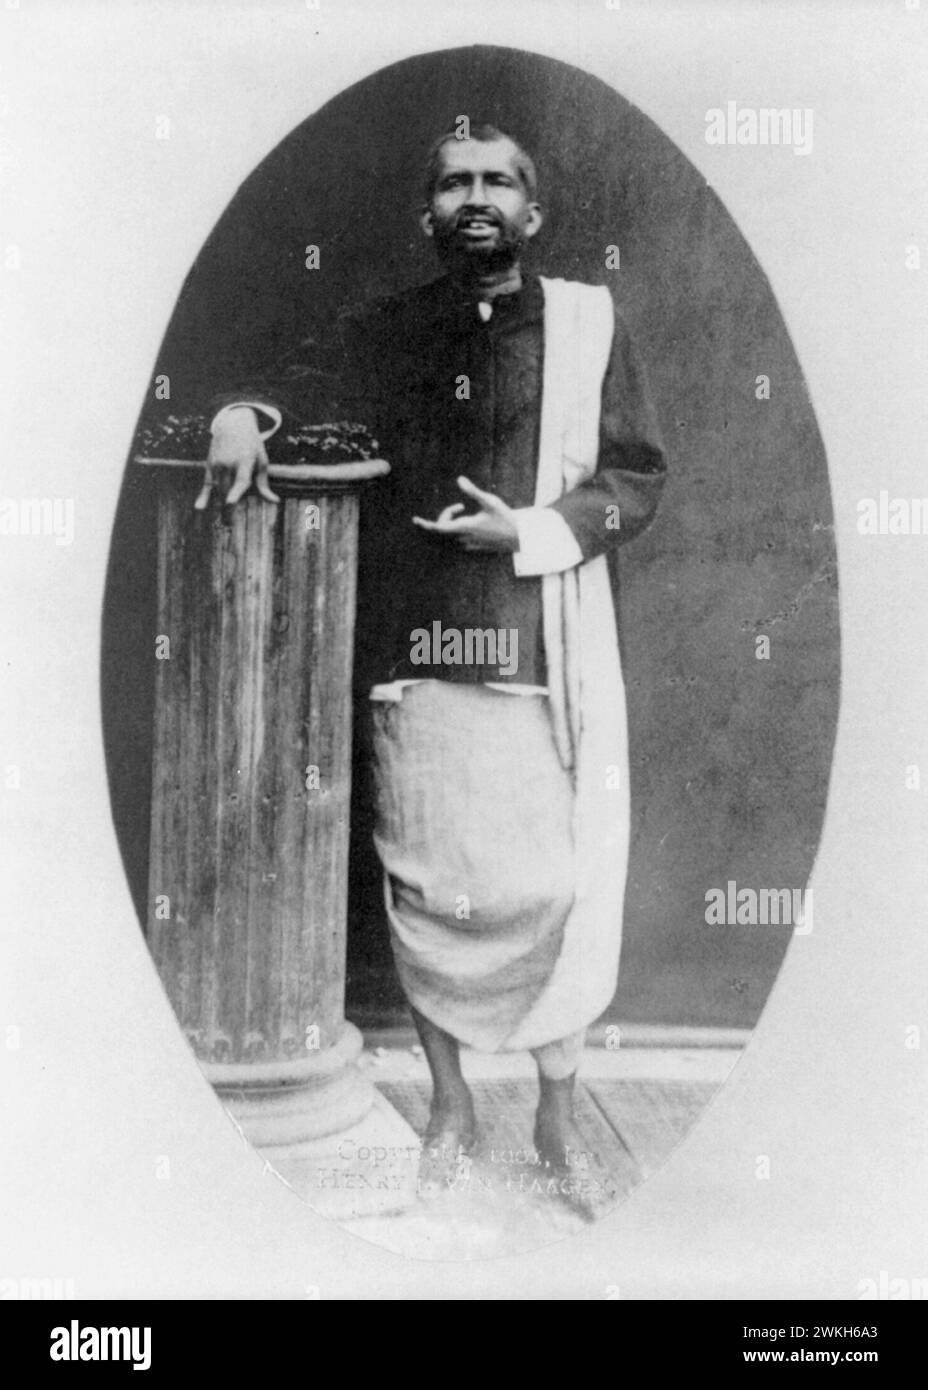 Fotografia dell'insegnante spirituale indù indiano Ramakrishna, ritratto a figura intera, in piedi ca. 1901 Foto Stock